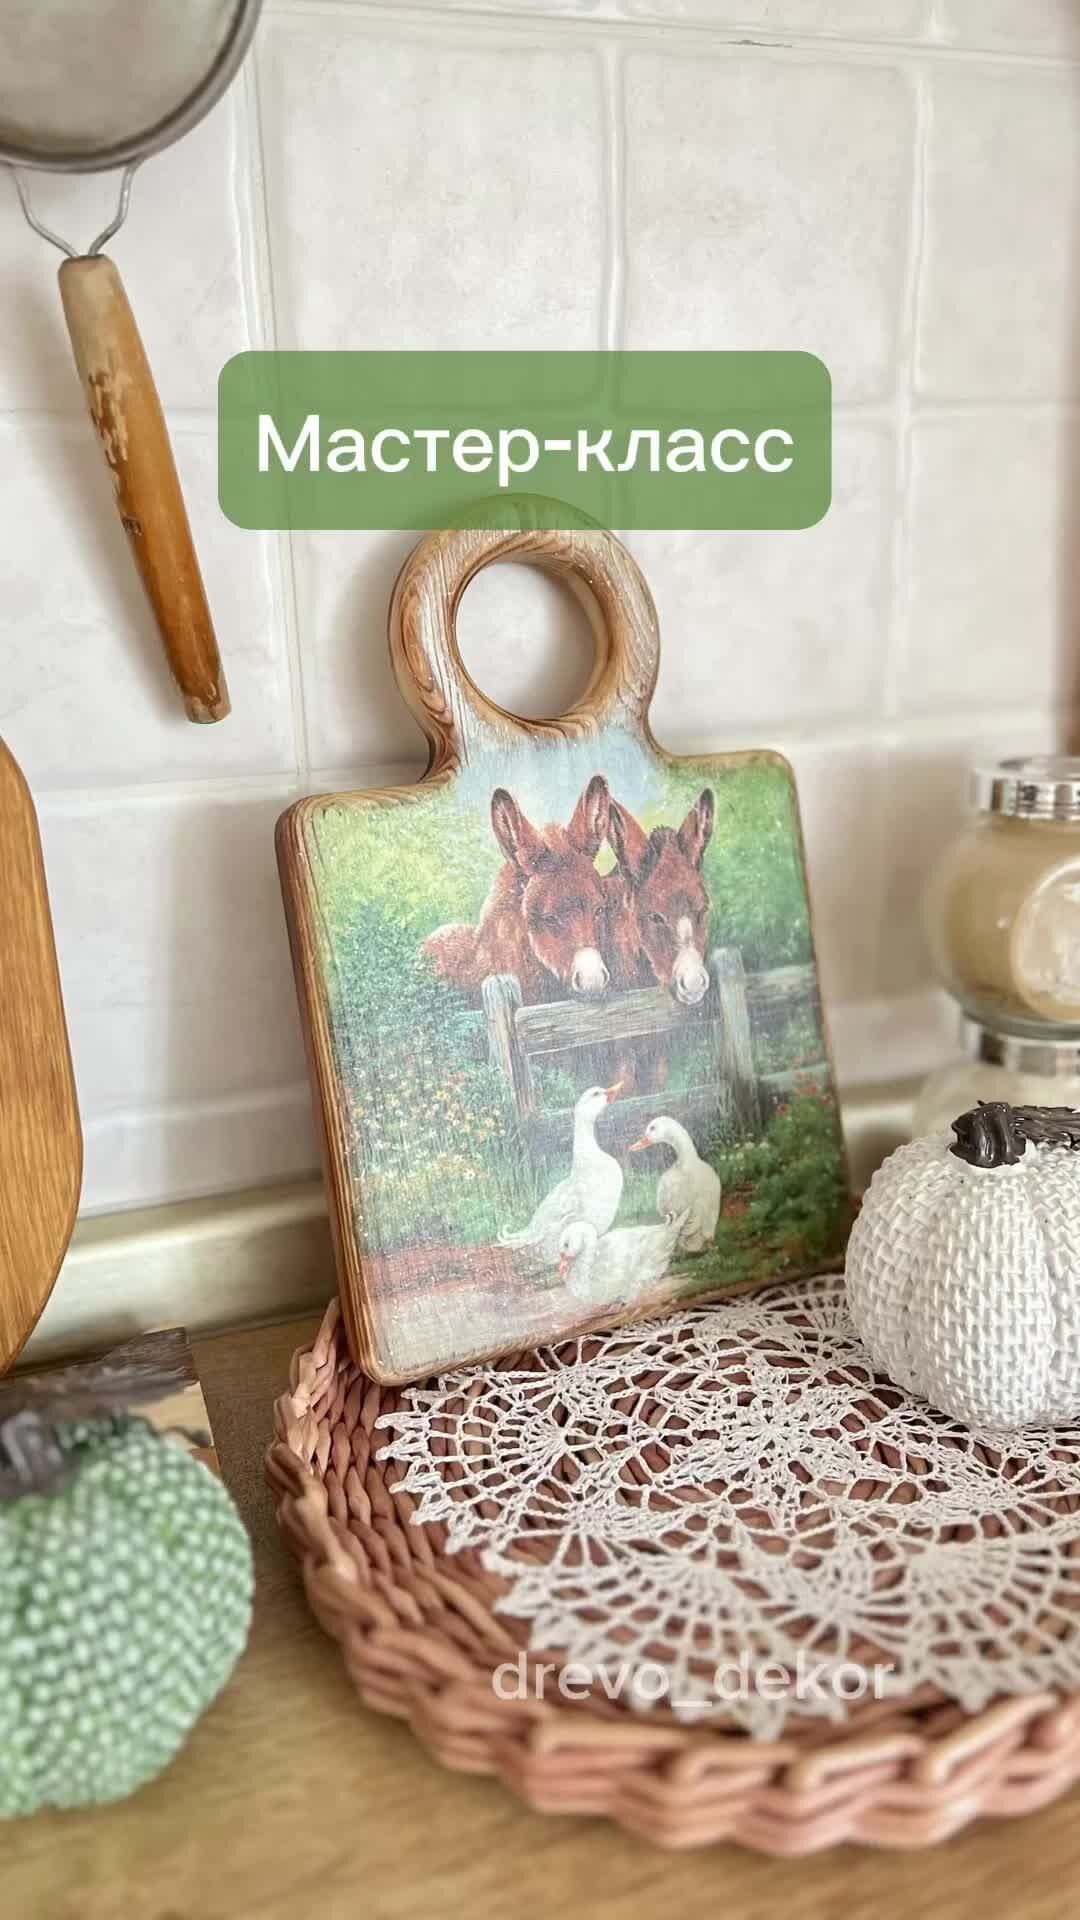 Подарочный сертификат Мастер-класс декупаж в Санкт-Петербурге